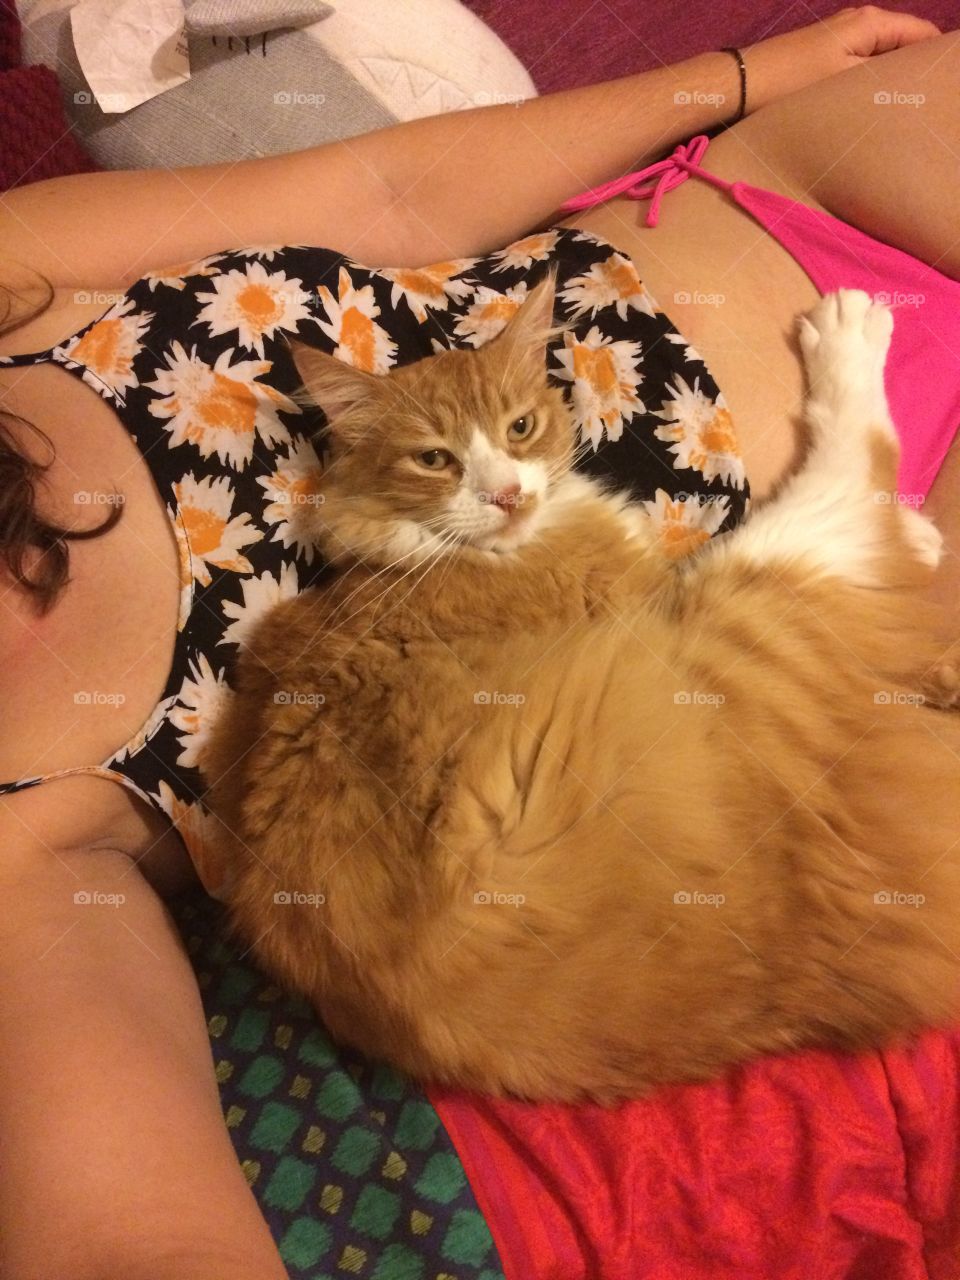 Cat cuddles